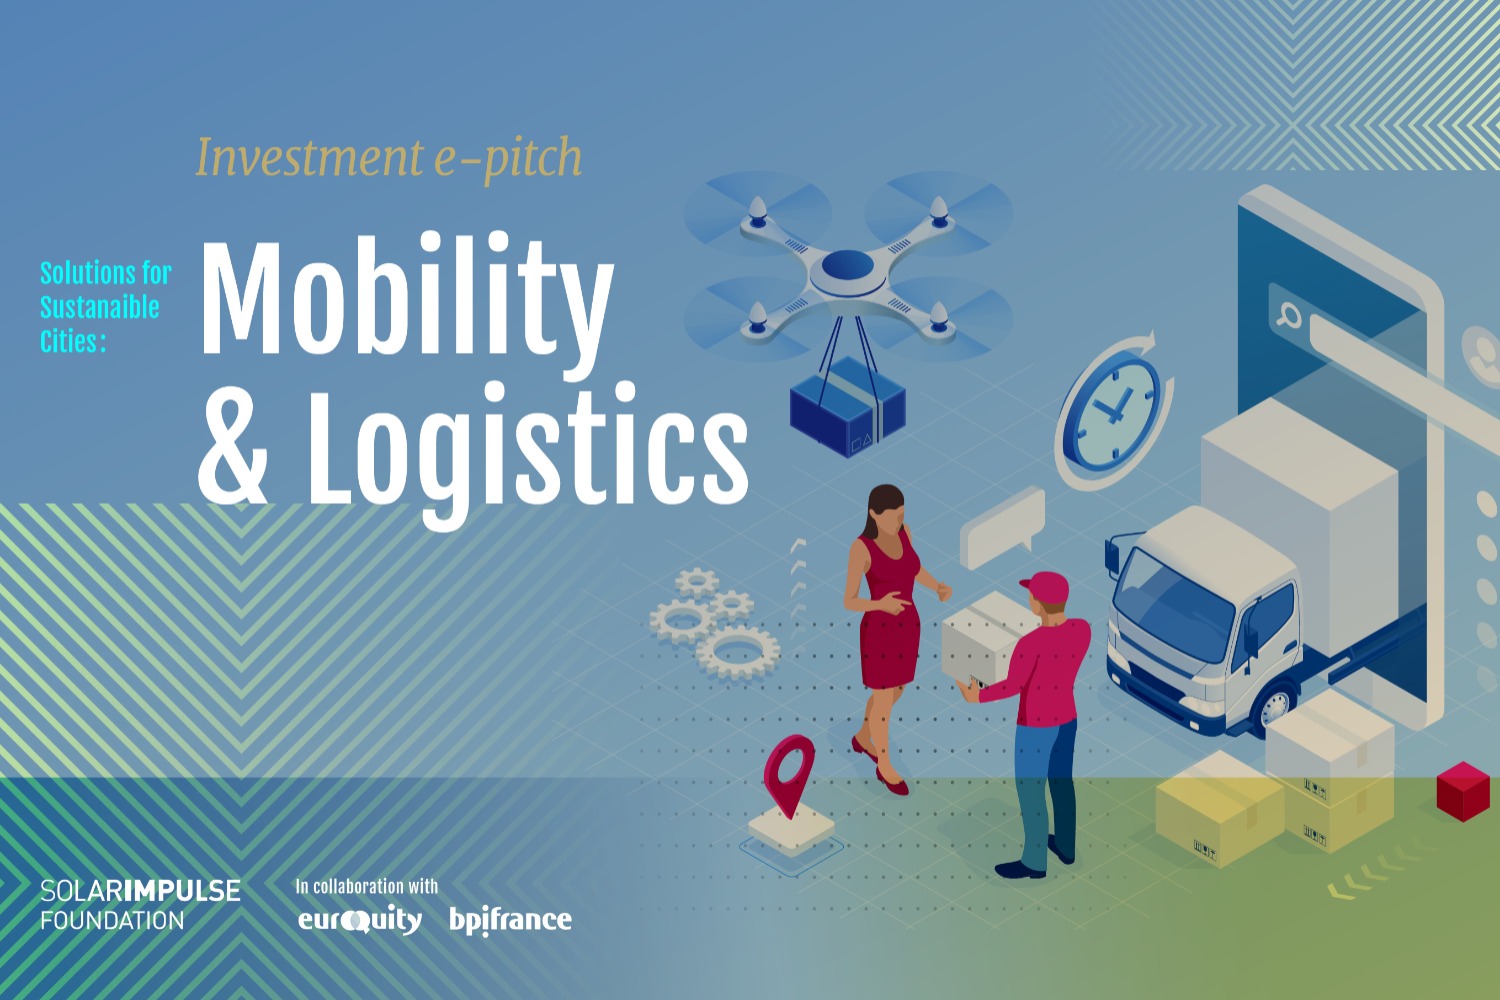 Investitionen in Lösungen für Städte: Mobilität und Logistik